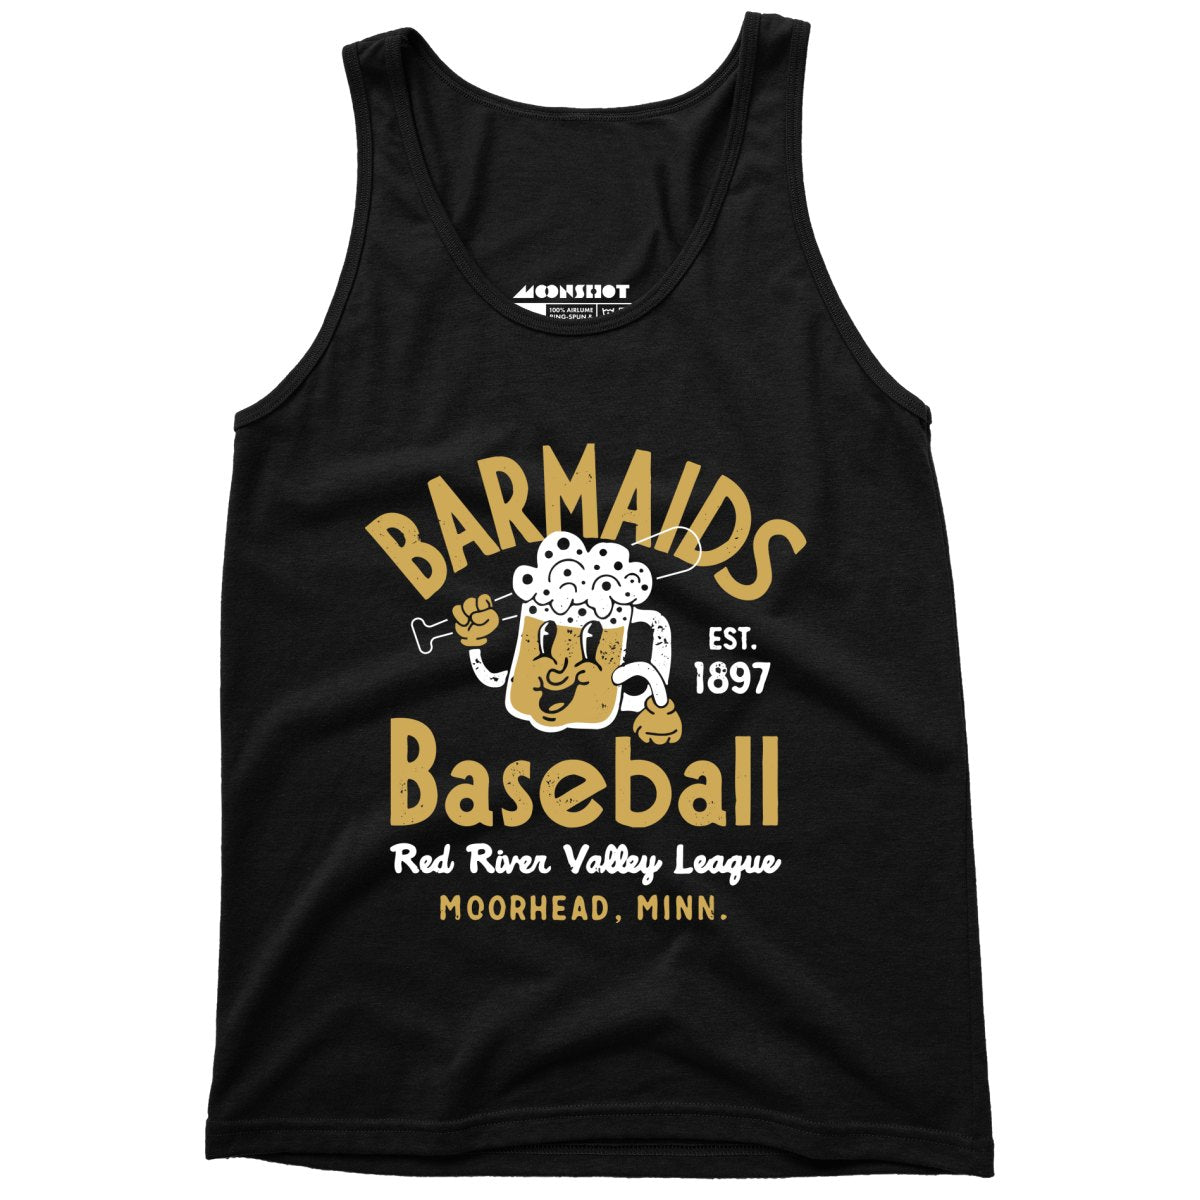 Moorhead Barmaids - Minnesota - Vintage Defunct Baseball Teams - Unisex Tank Top